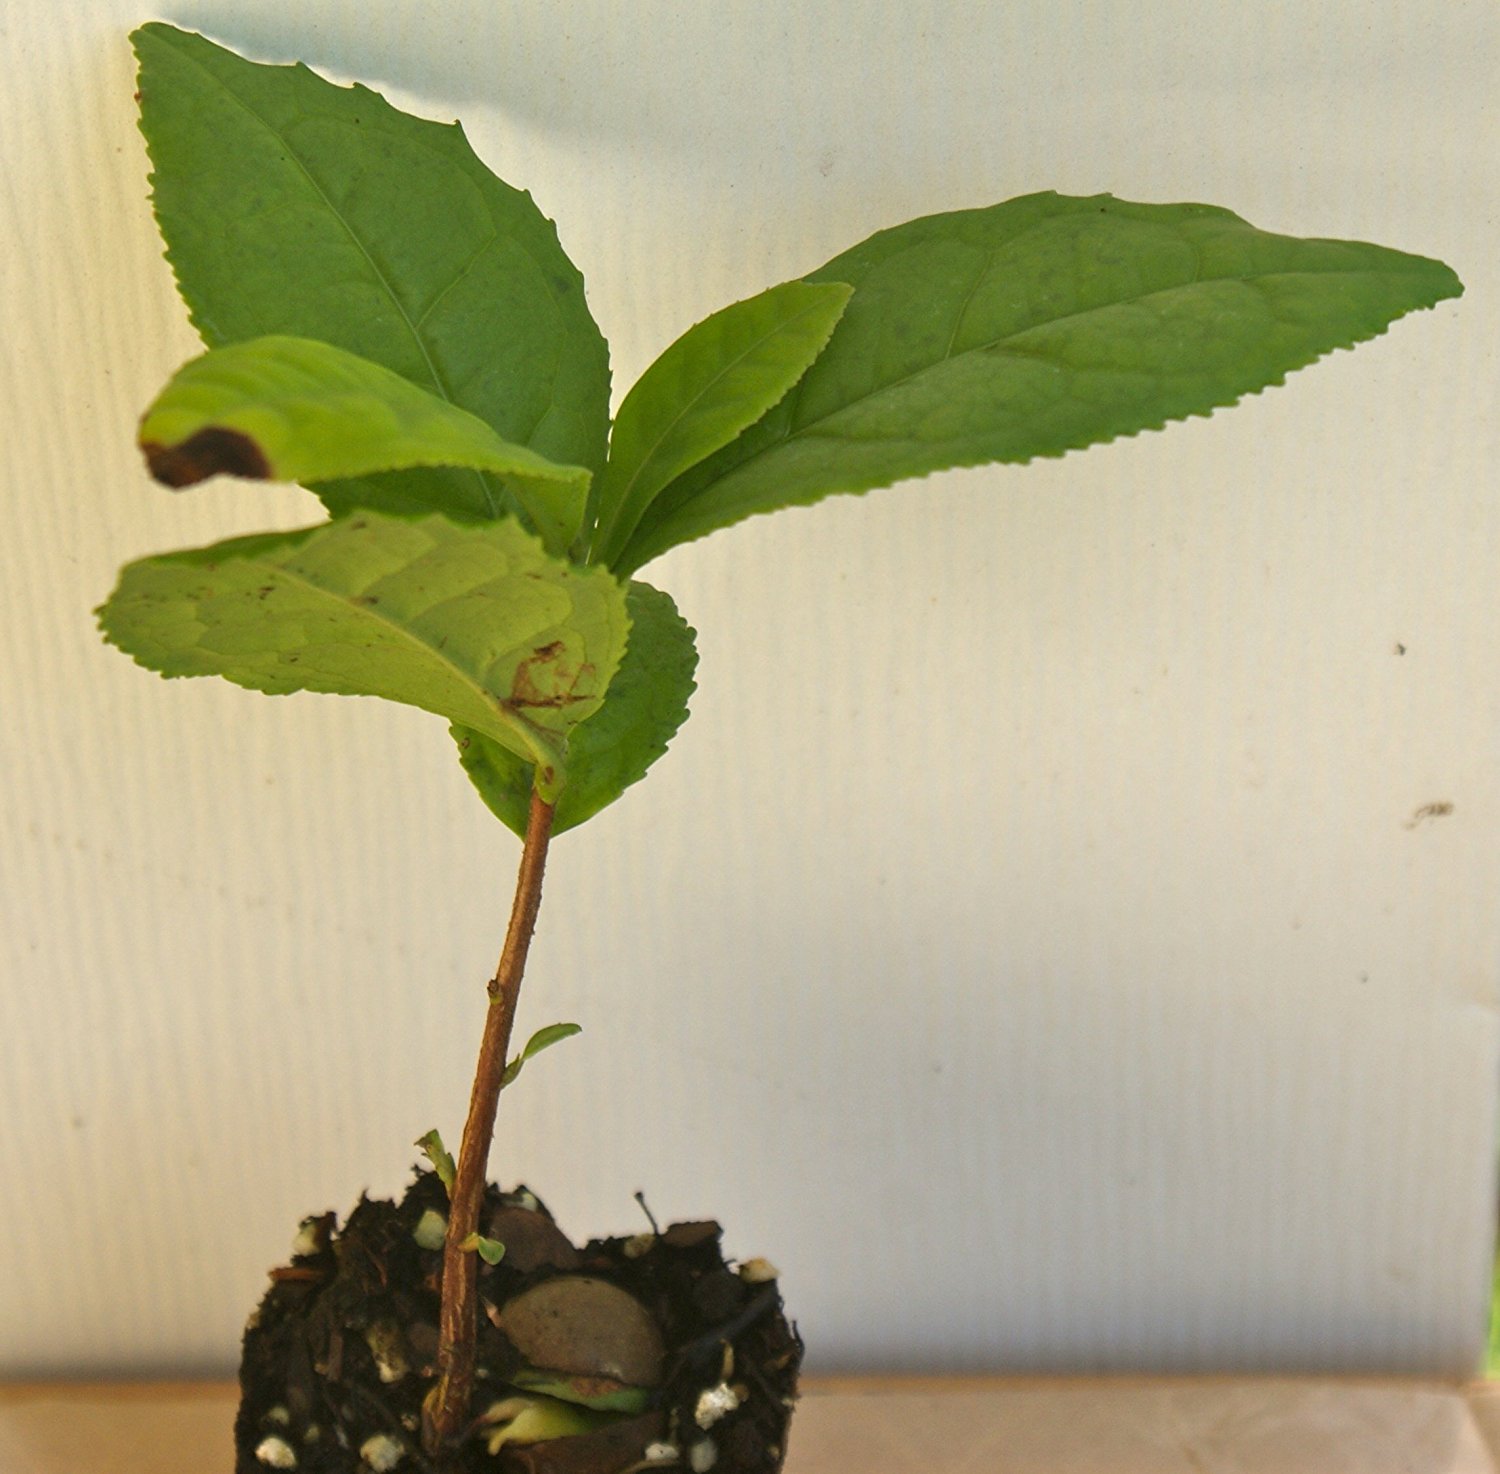 Amazon.com : Camellia Sinensis ~ Green Tea ~ Live Plant (1) : Garden ...